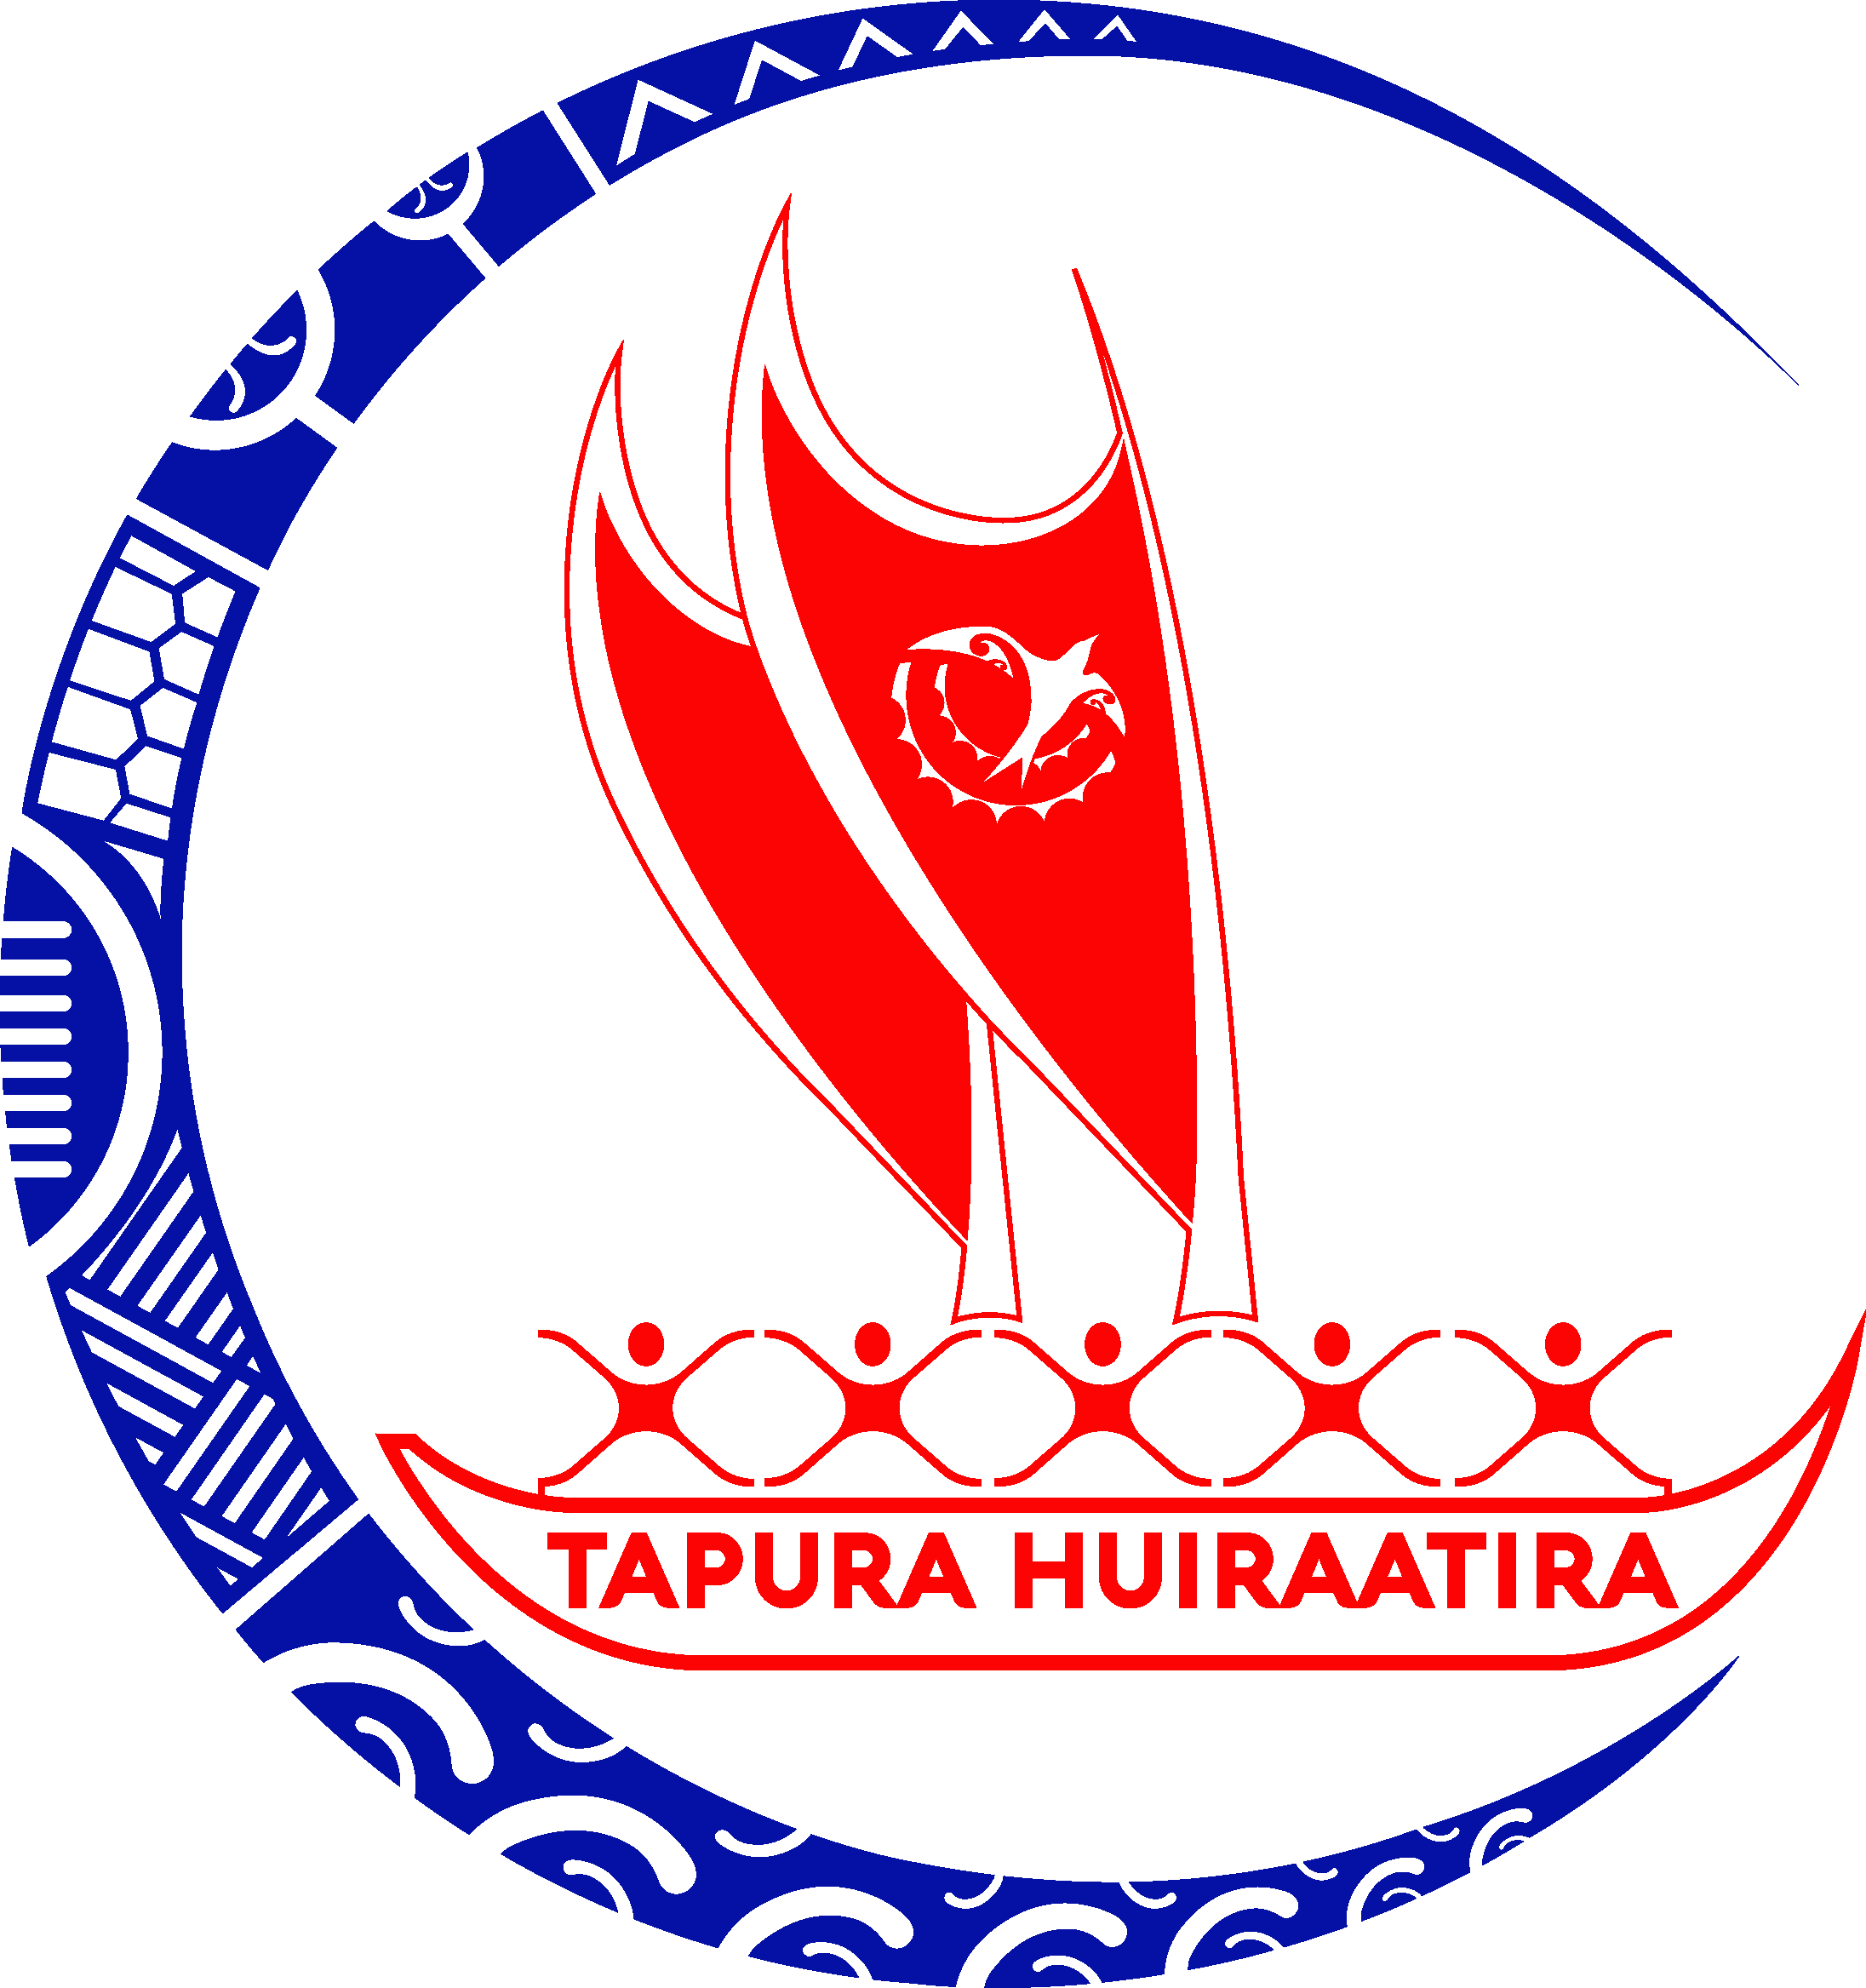 Tapura Huiraatira